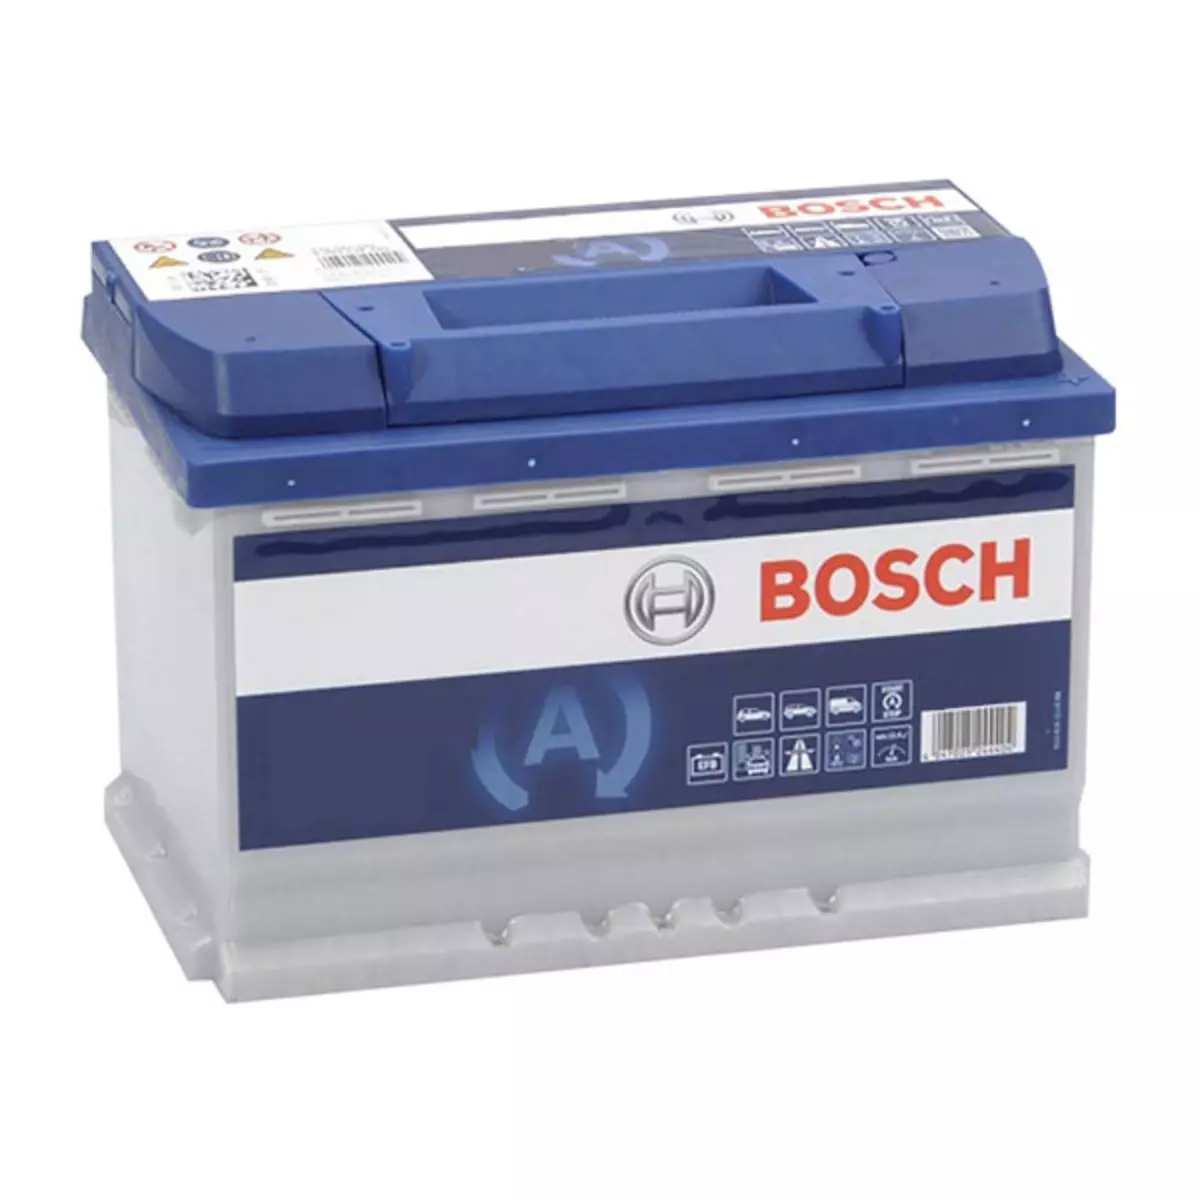 BOSCH Batterie Bosch S4E420 85Ah 800A BOSCH